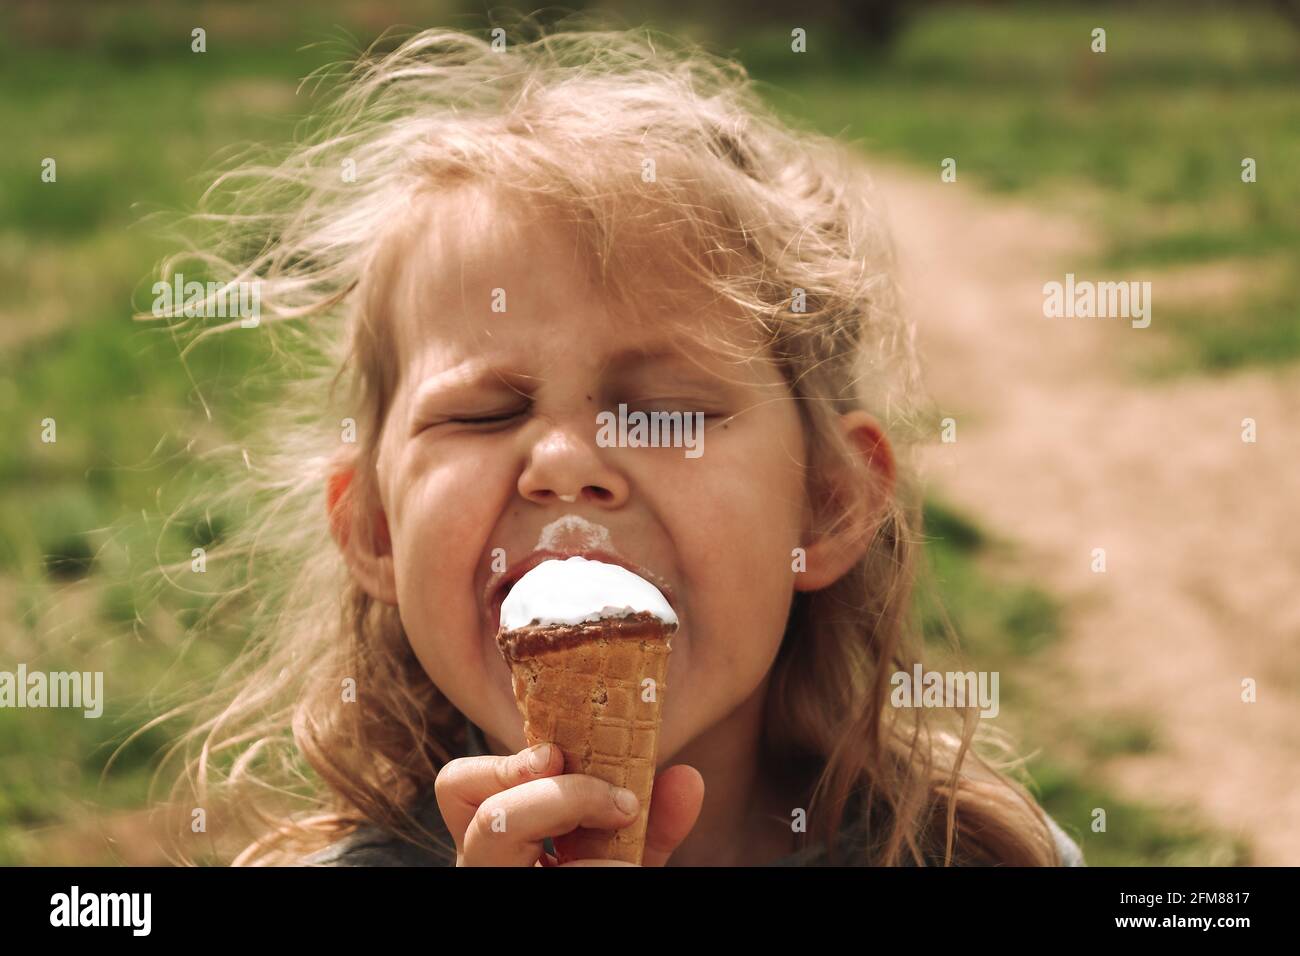 Ritratto di un bambino in natura. Spazio di copia. Bella ragazza bionda di 4 anni. Sfondo verde erba. Il bambino sta mangiando gelato freddo. Foto Stock